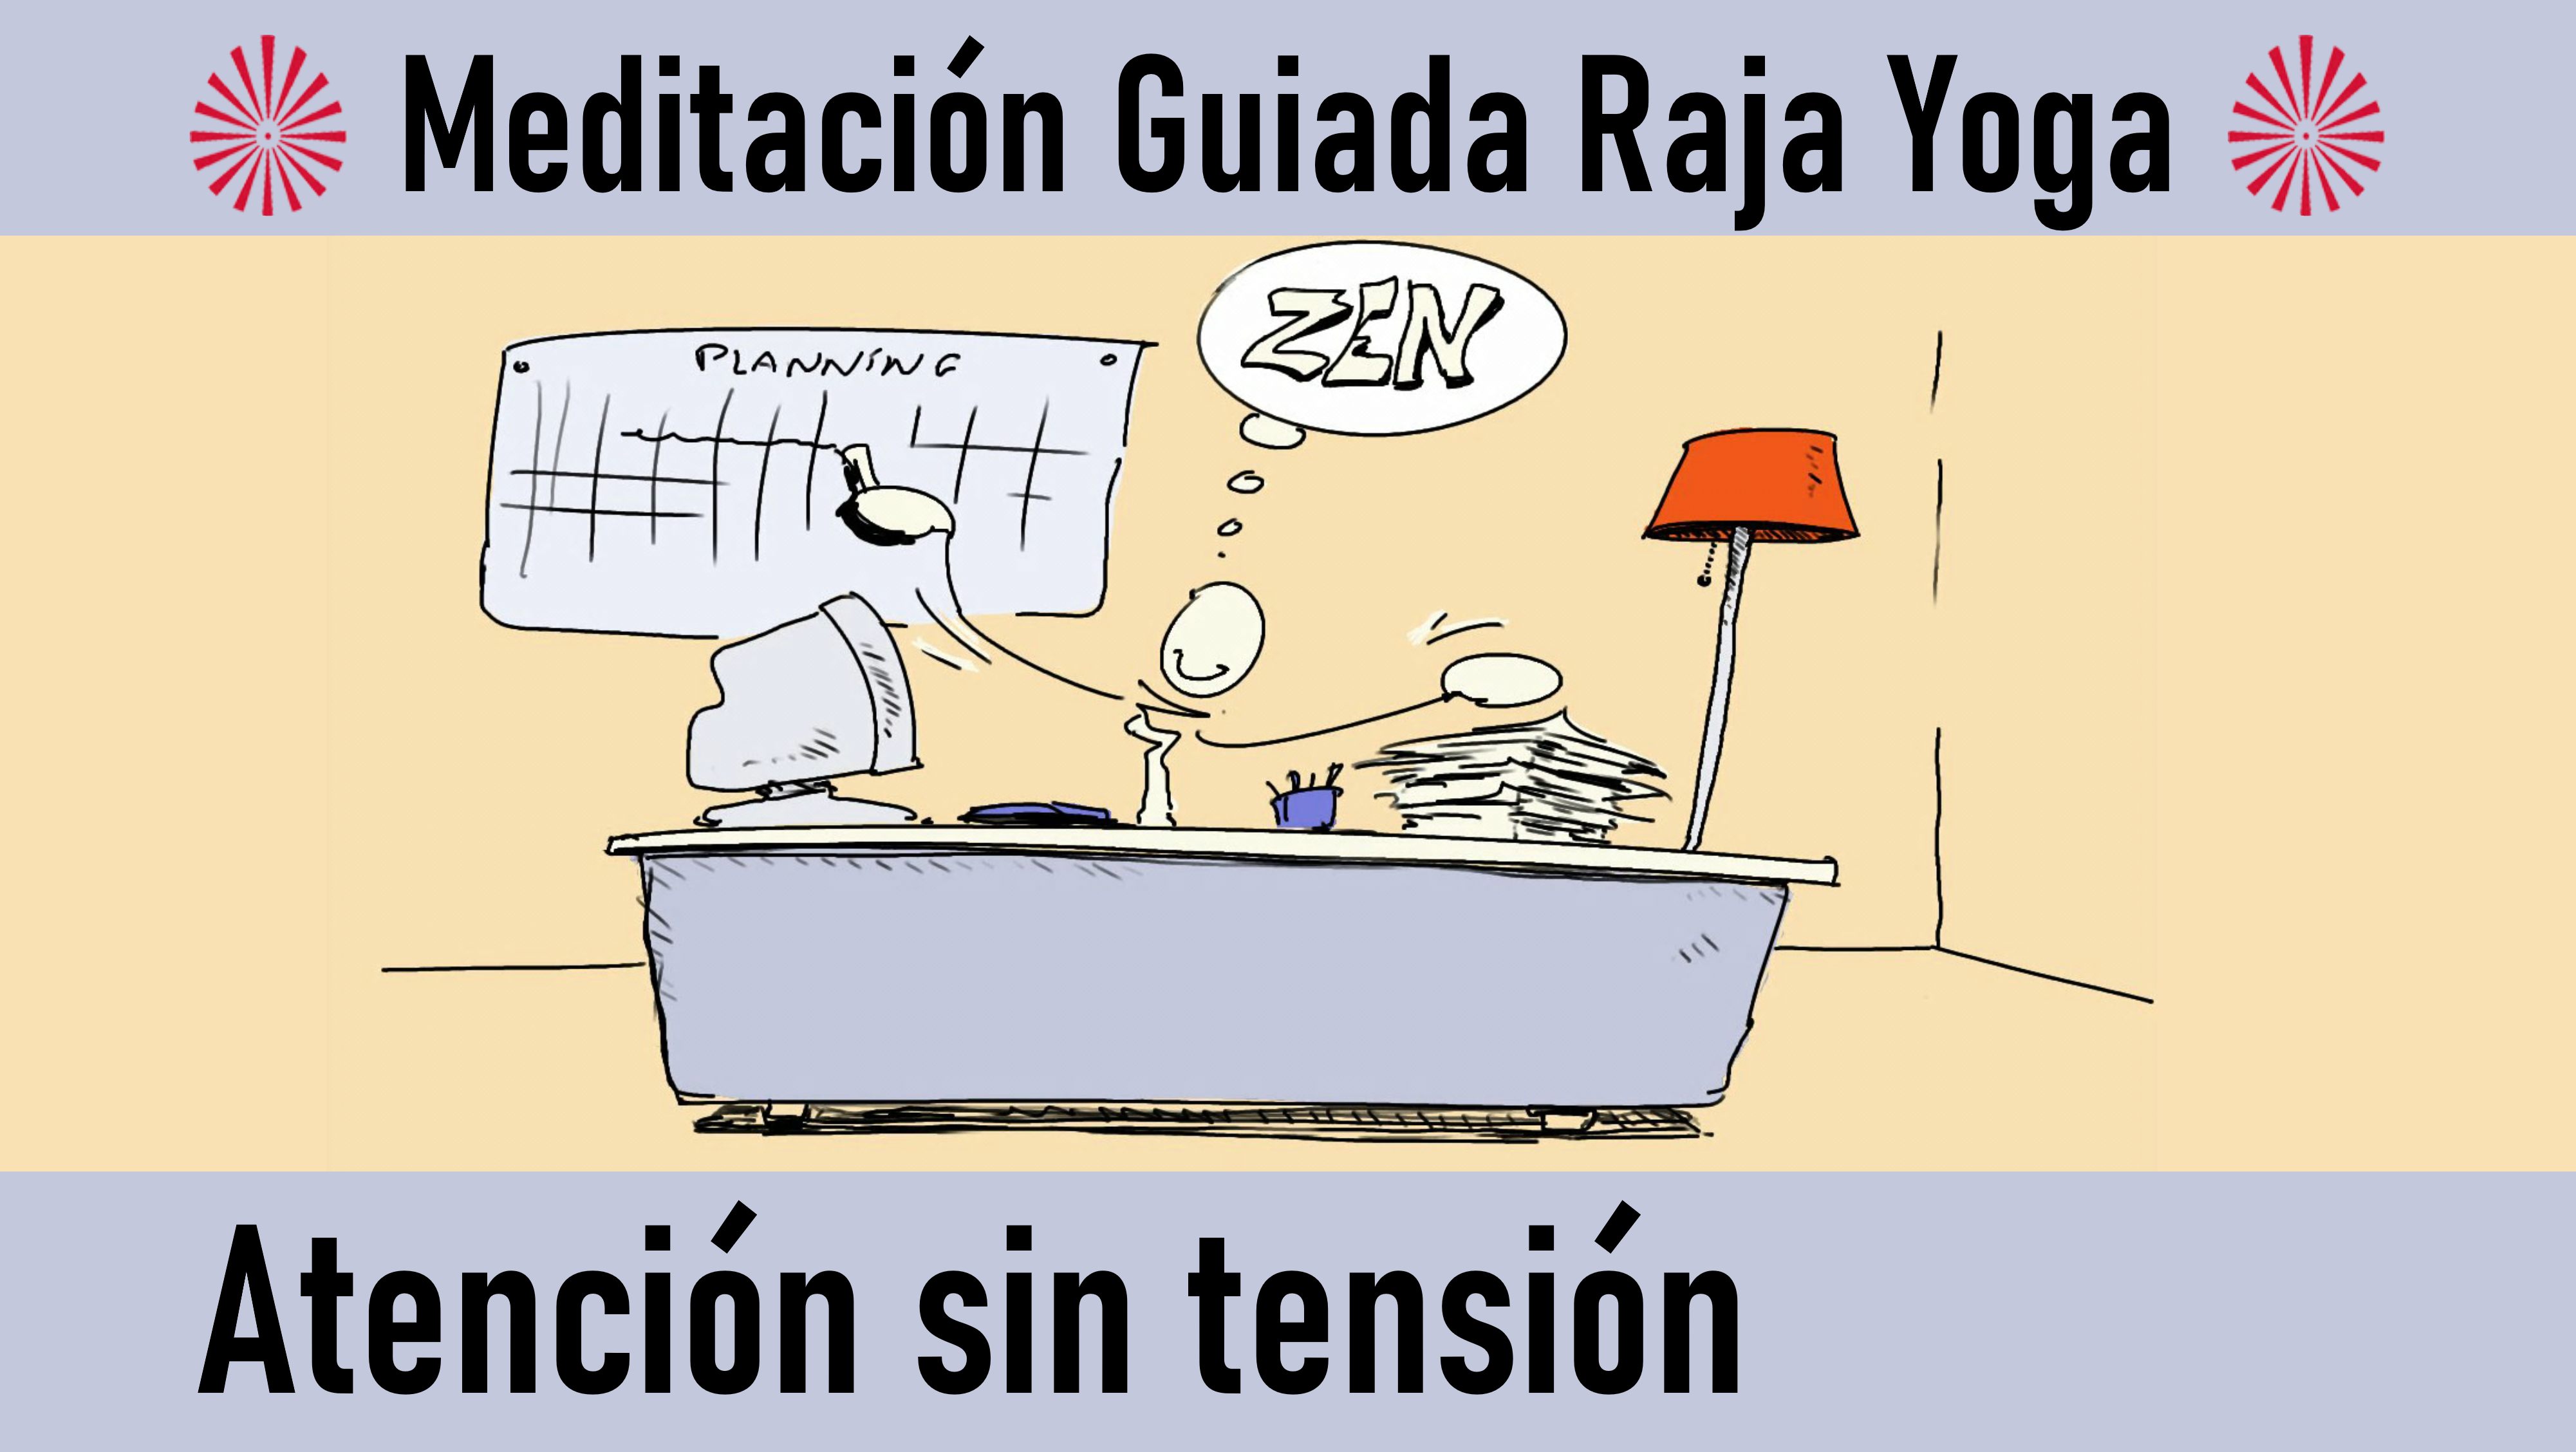 Meditación Raja Yoga: Atención sin tensión (10 Septiembre 2020) On-line desde Madrid